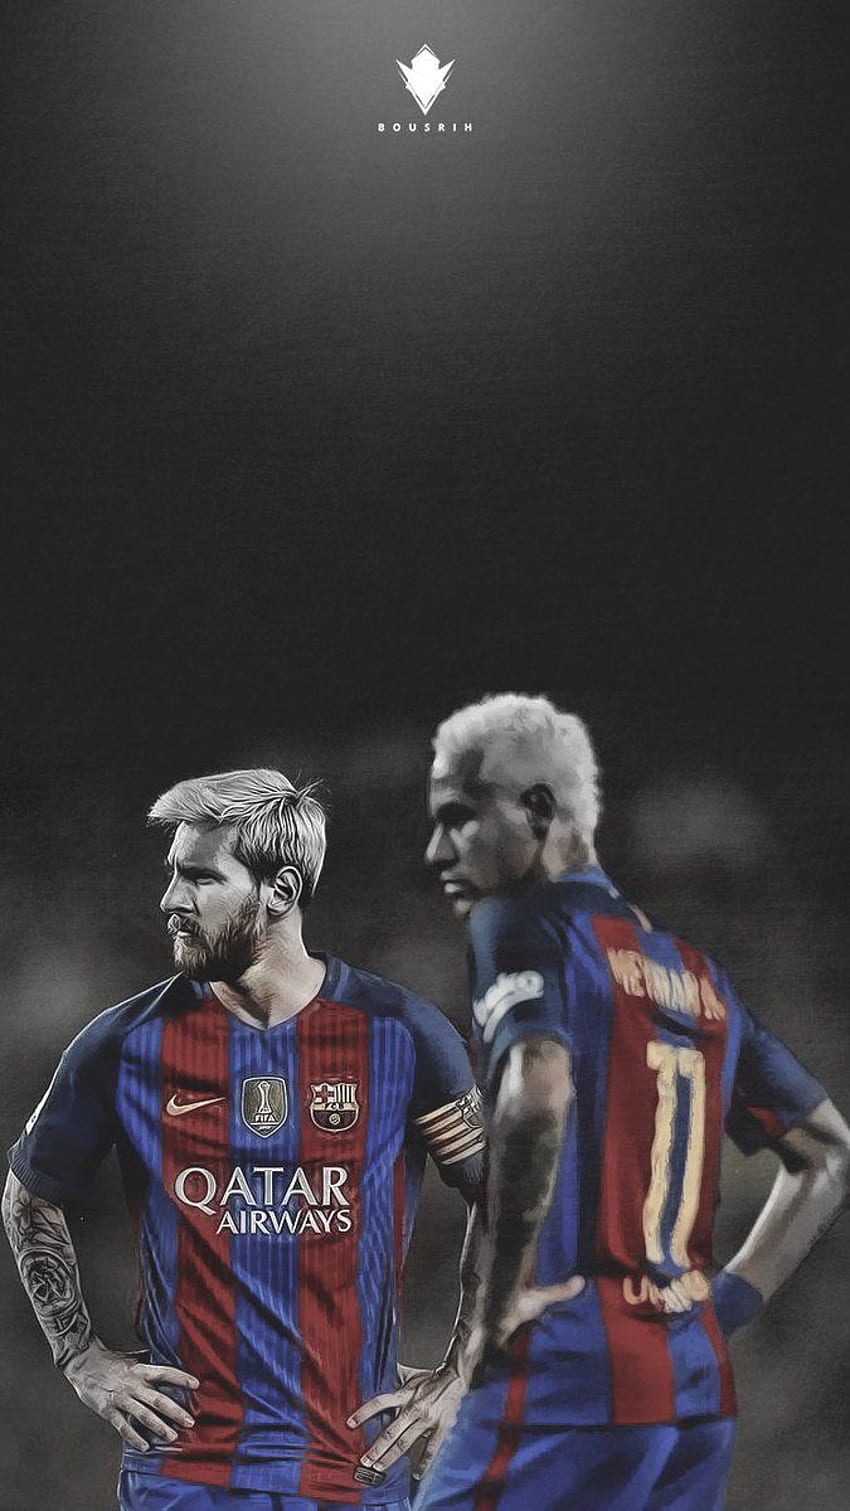 Messi, Neymar, lockscreen: Là fan của Messi và Neymar thì bạn không thể bỏ qua những hình ảnh đẹp mắt về hai siêu sao này để sử dụng làm hình nền điện thoại của mình. Hãy thưởng thức những bức ảnh tuyệt đẹp và chọn cho mình một hình nền ấn tượng nhất để thể hiện tình yêu của mình với hai ngôi sao này.